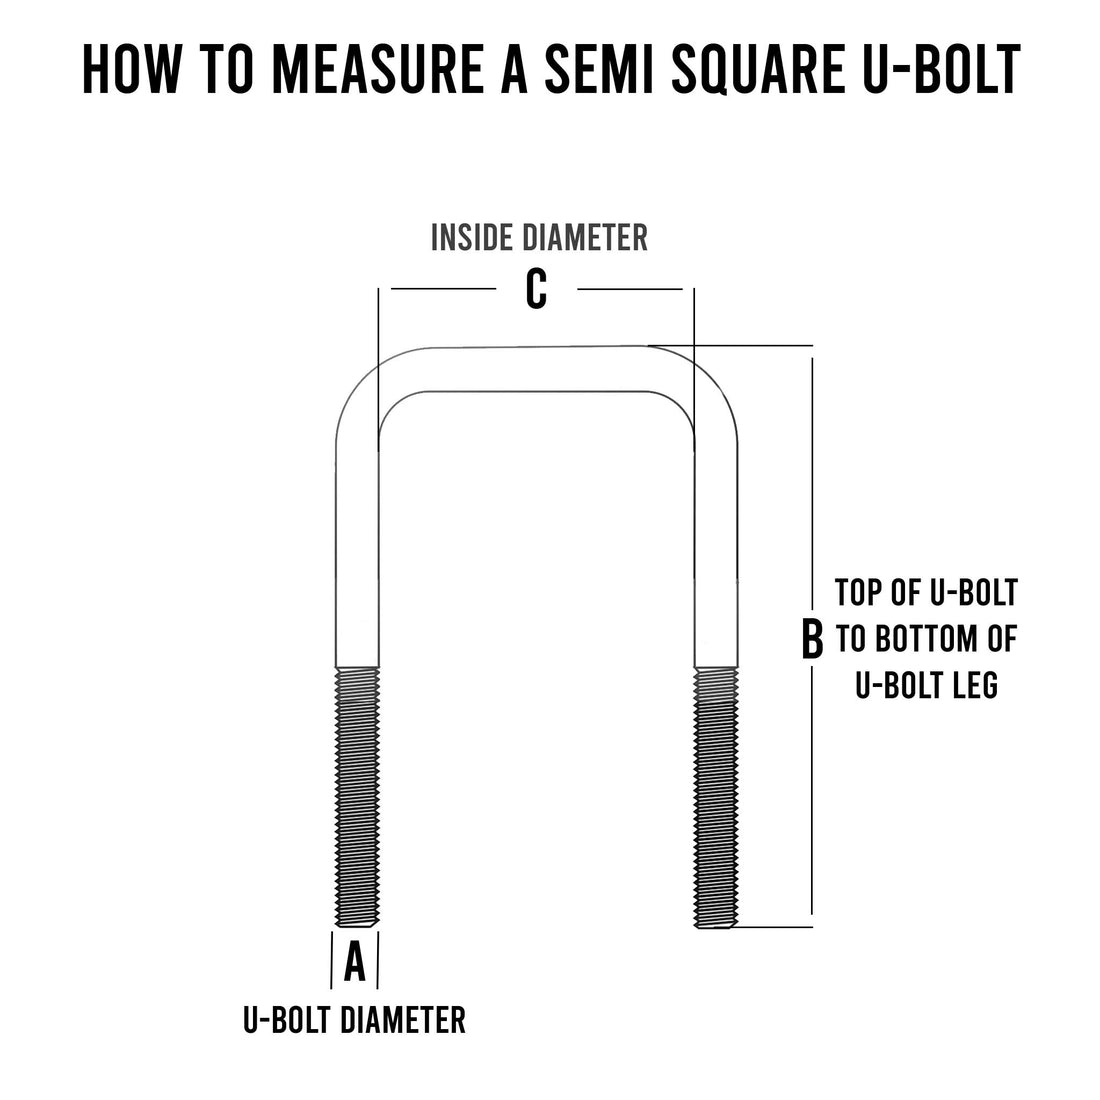 Semi Square U-Bolt - 3/8 Inch Diameter